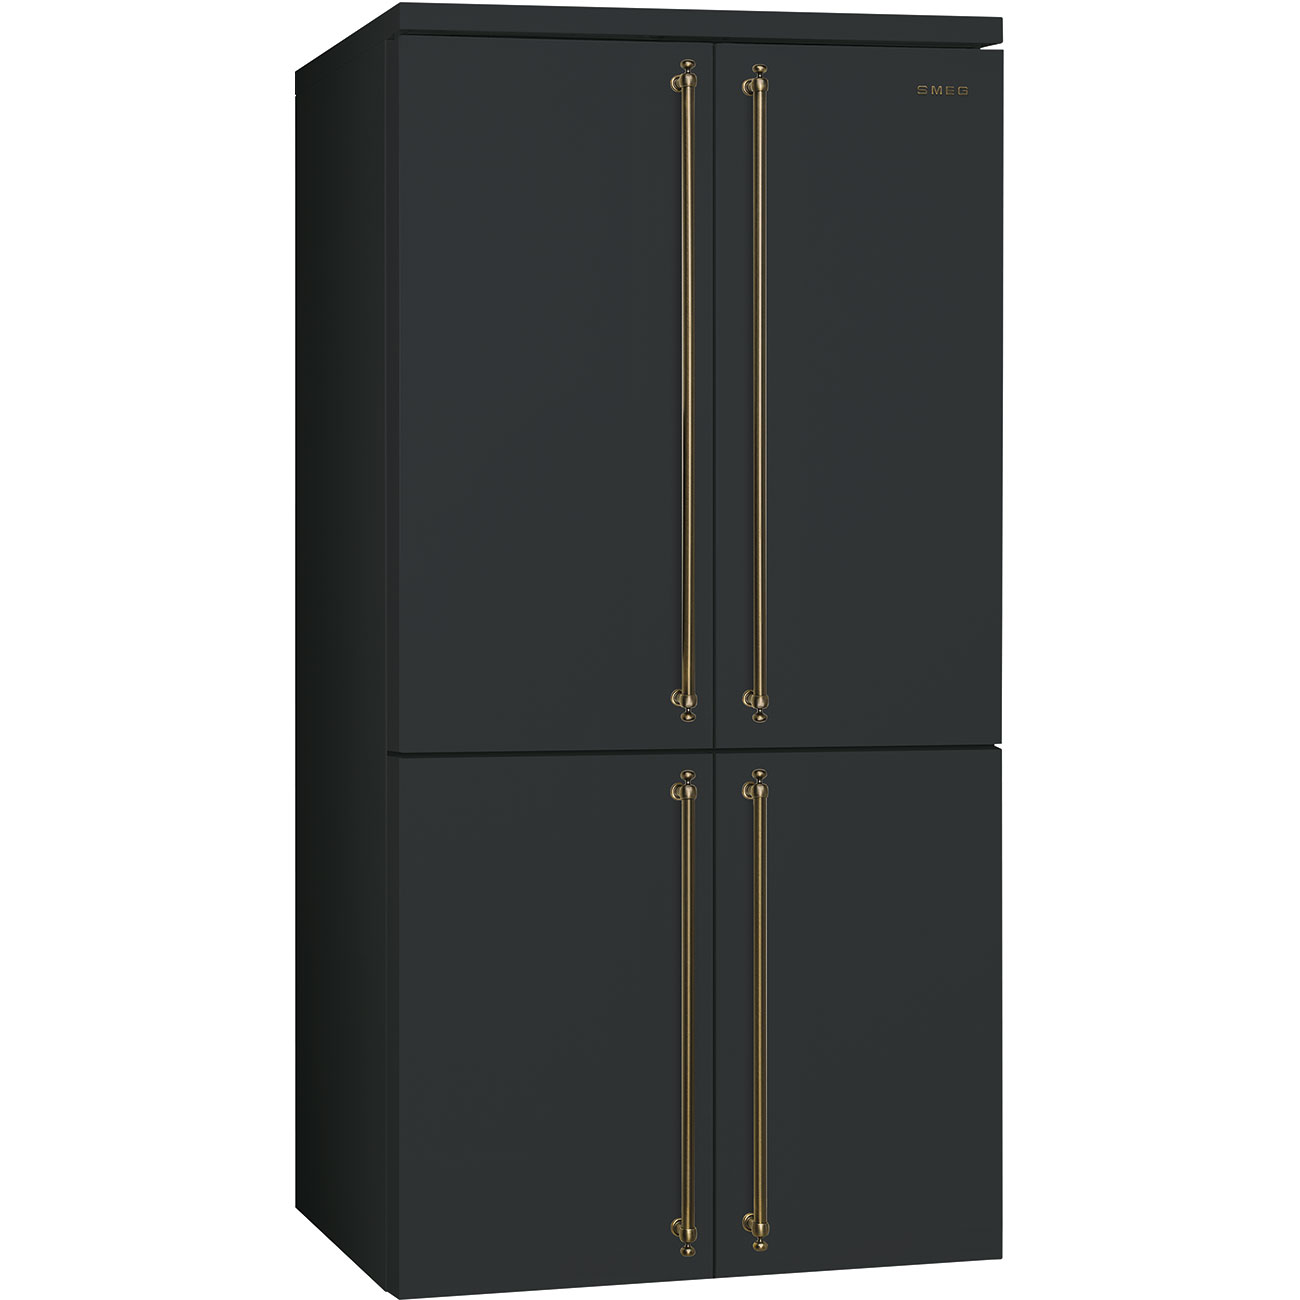 SMEG FQ60CAO5 Отдельностоящий 4-х дверный холодильник Side-by-side, No-frost, антрацит, фурнитура латунная